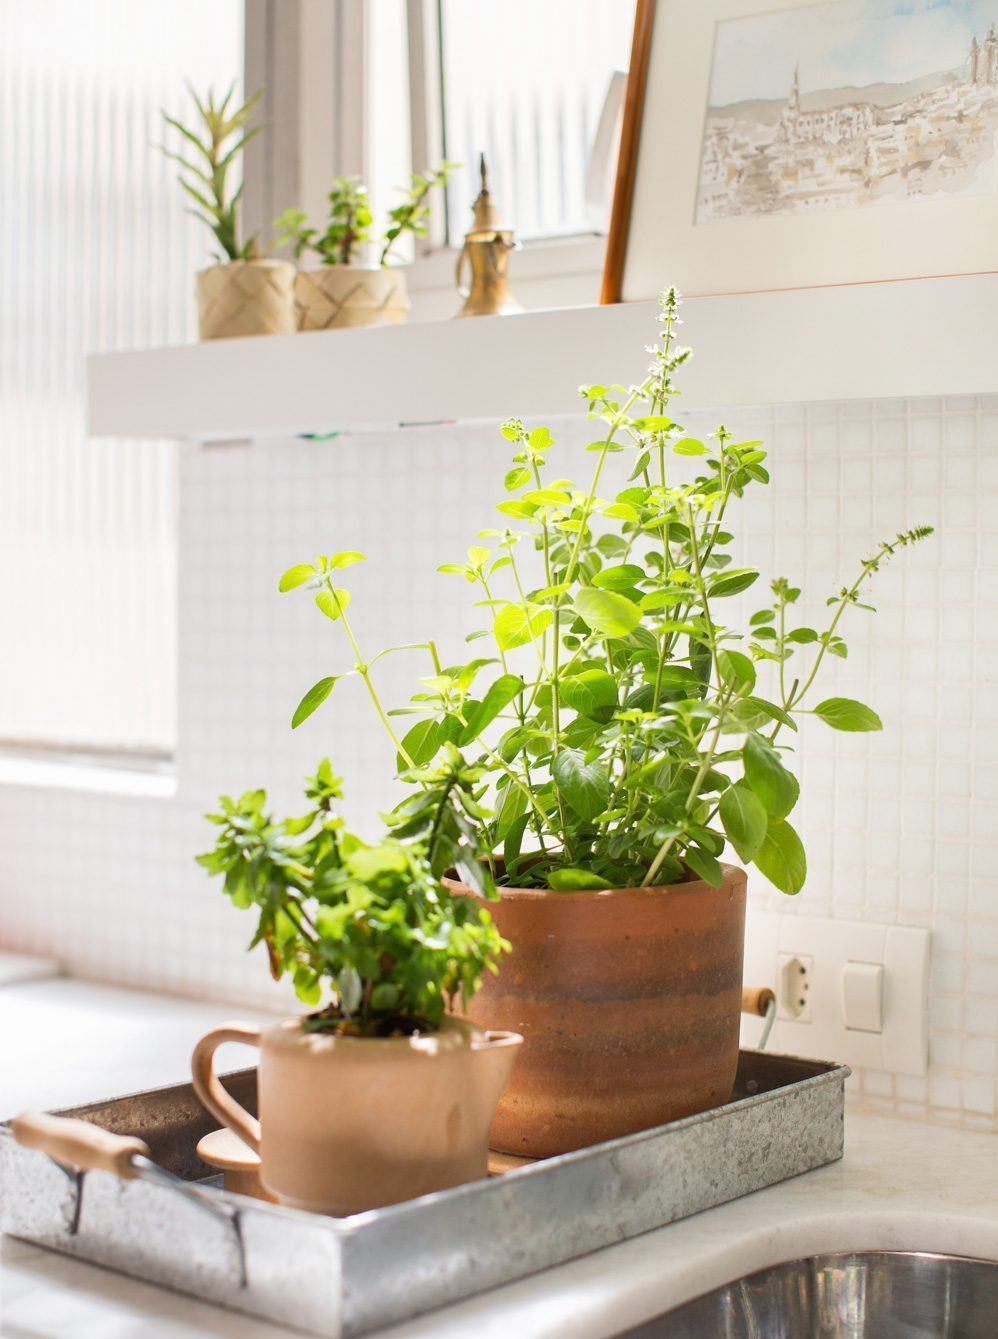 Os vasos são uma alternativa prática para deixar na bancada da cozinha.